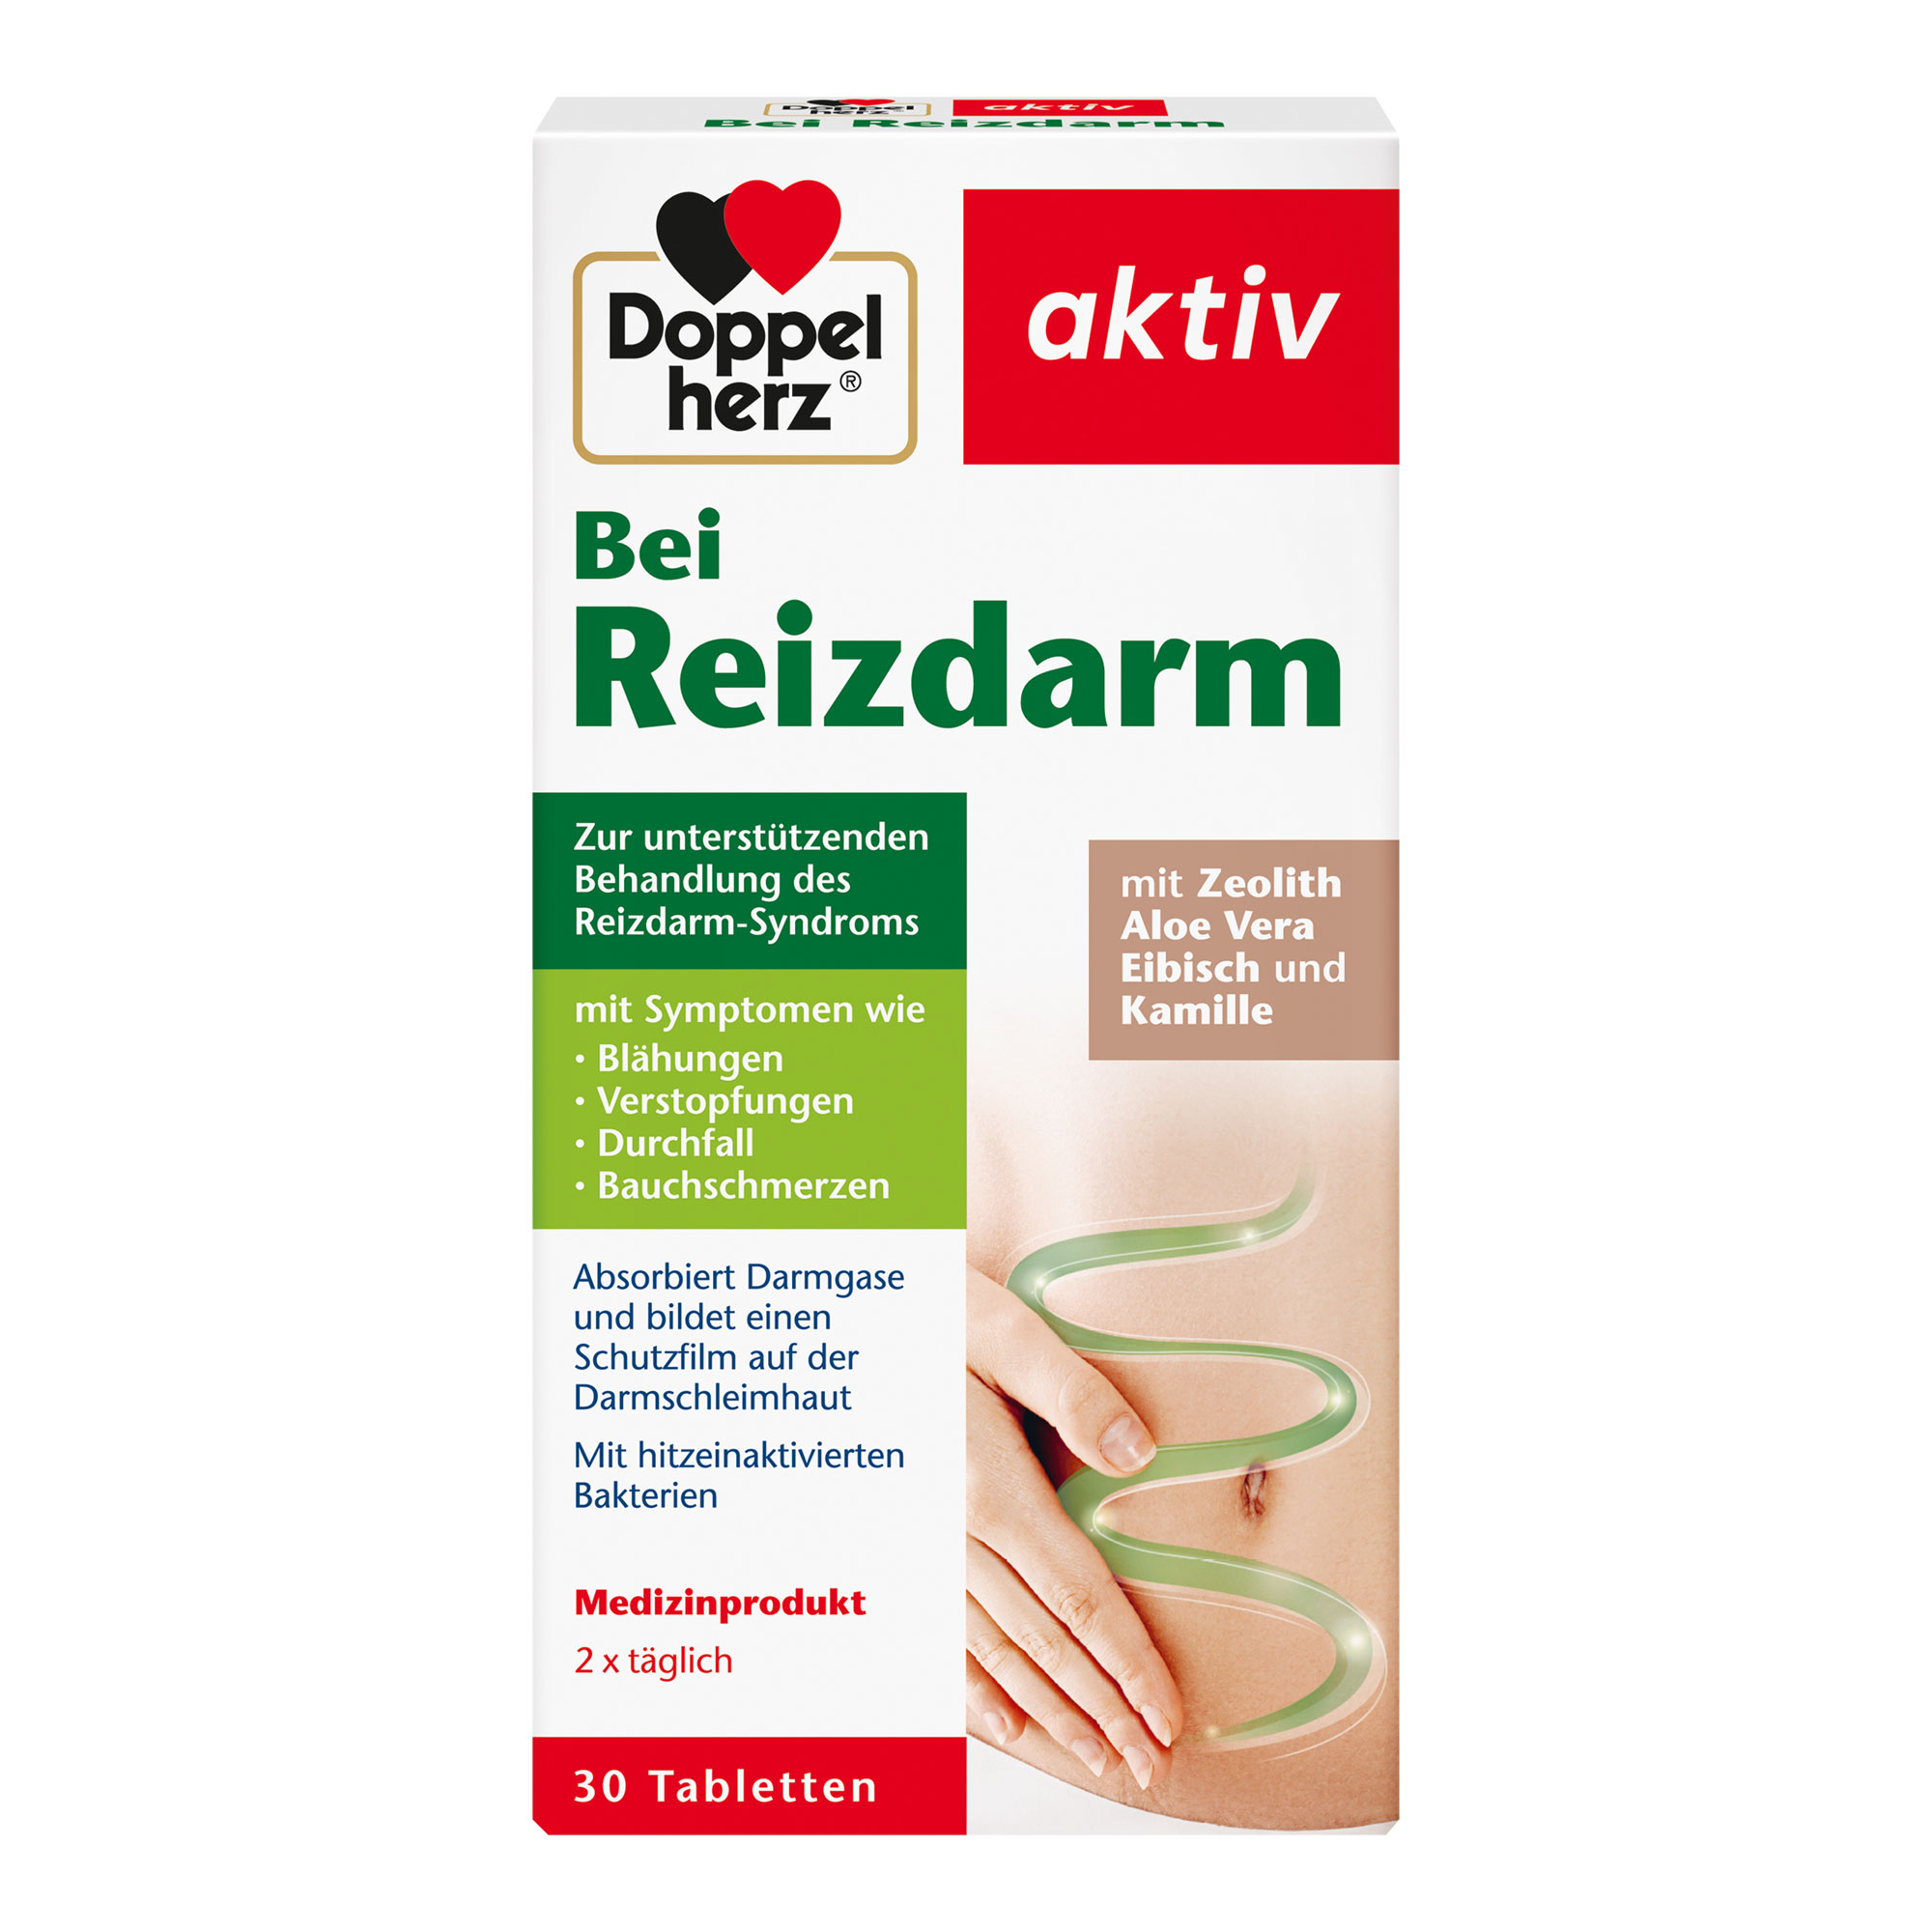 Zur unterstützenden Behandlung des Reizdarm-Syndroms. Medizinprodukt mit Zeolith, Aloe Vera, Eibisch und Kamille.